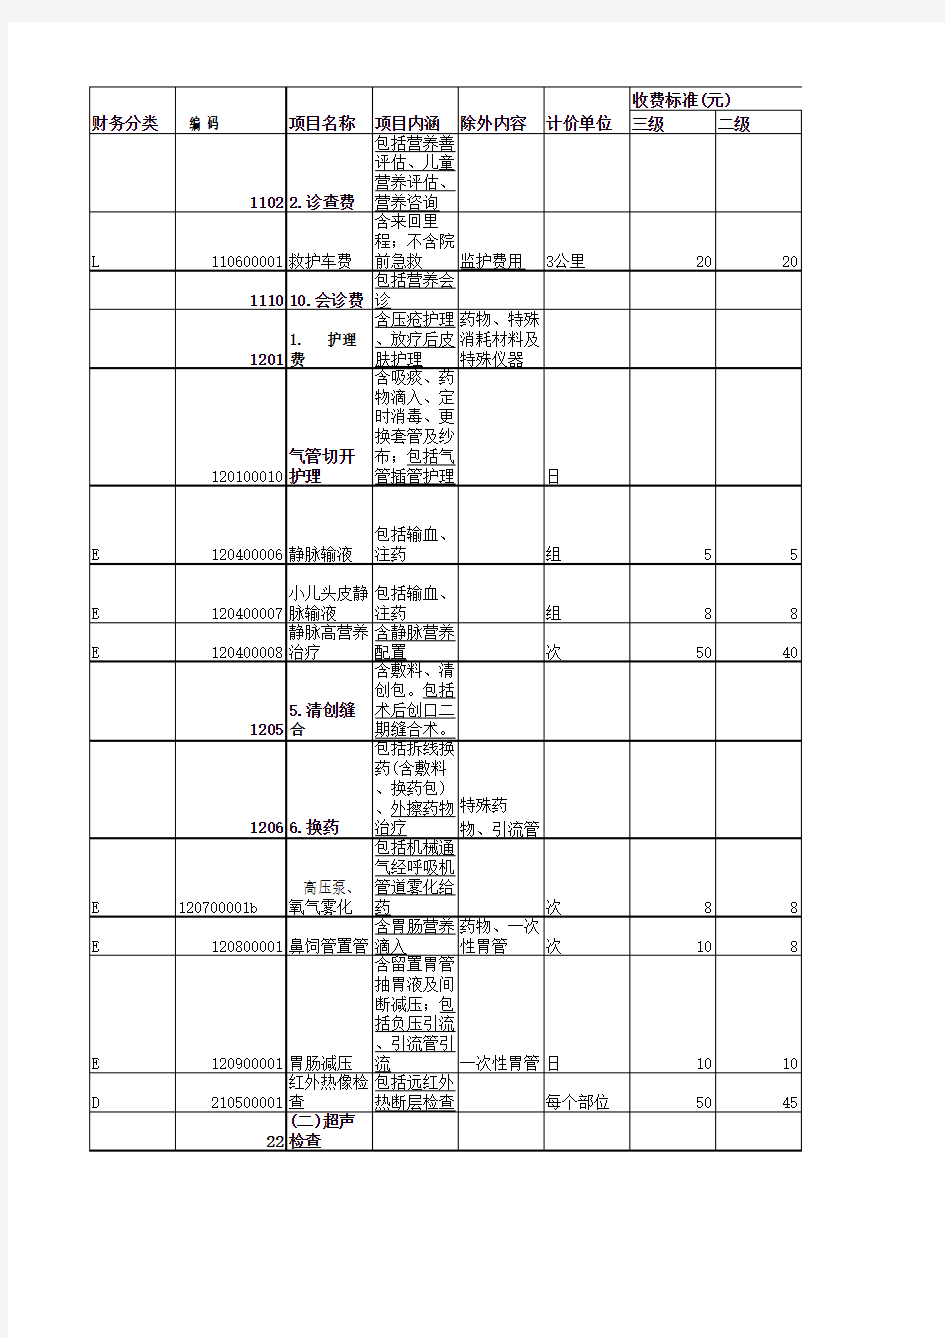 江西省医疗服务价格手册(2005年标准-增补完整版)(补充完整了“医疗诊疗类”)